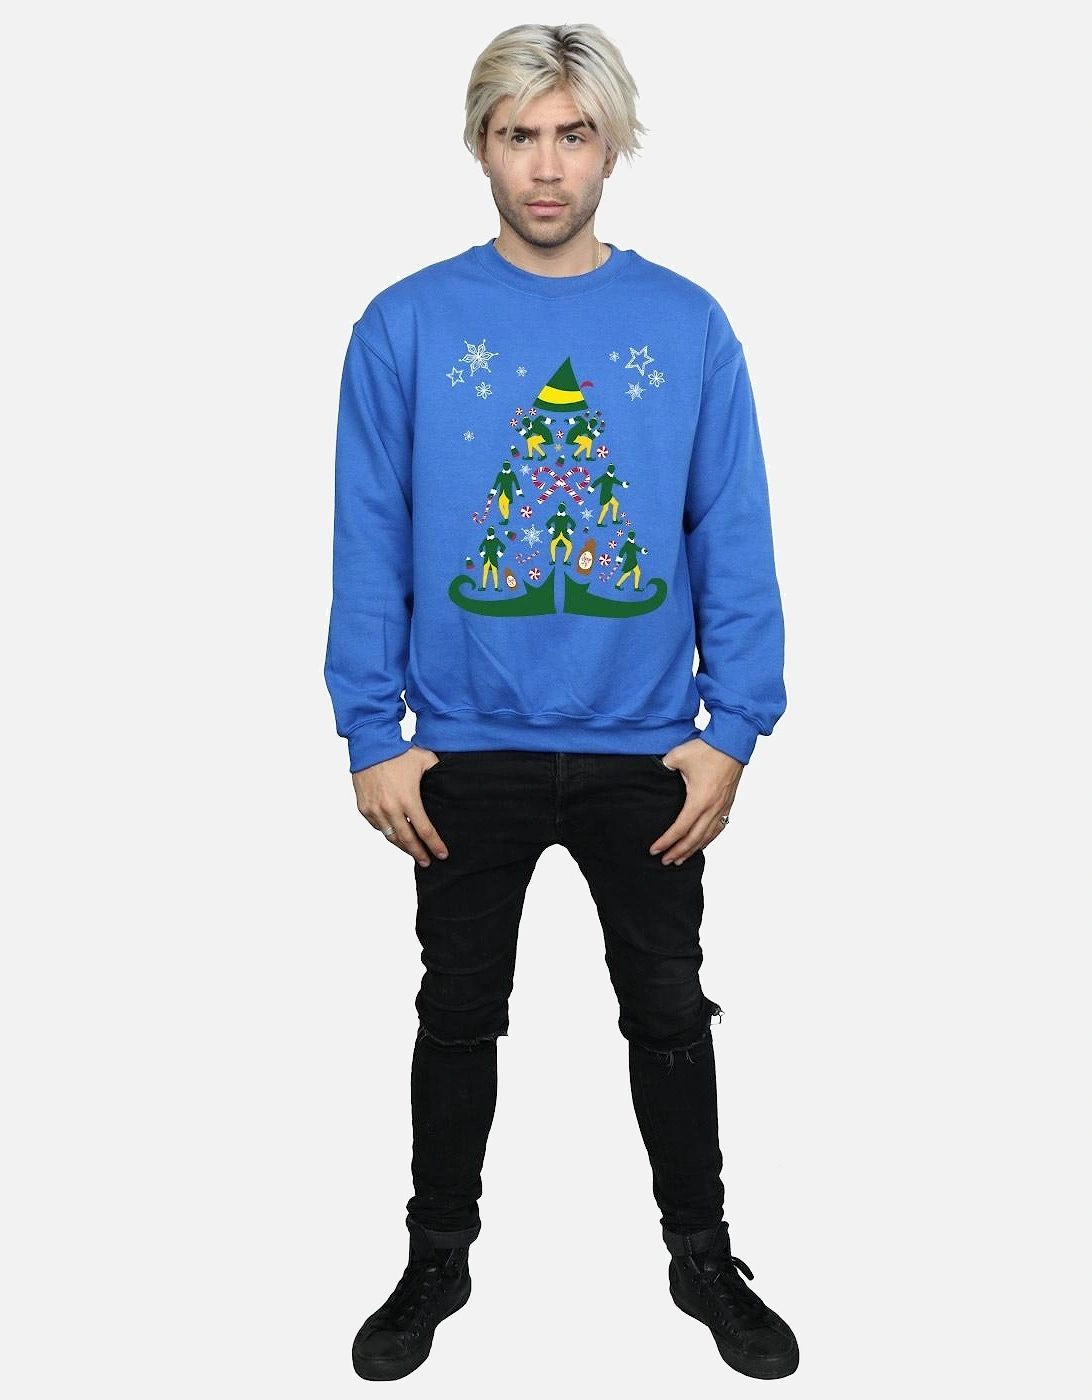 Mens Christmas Tree Sweatshirt